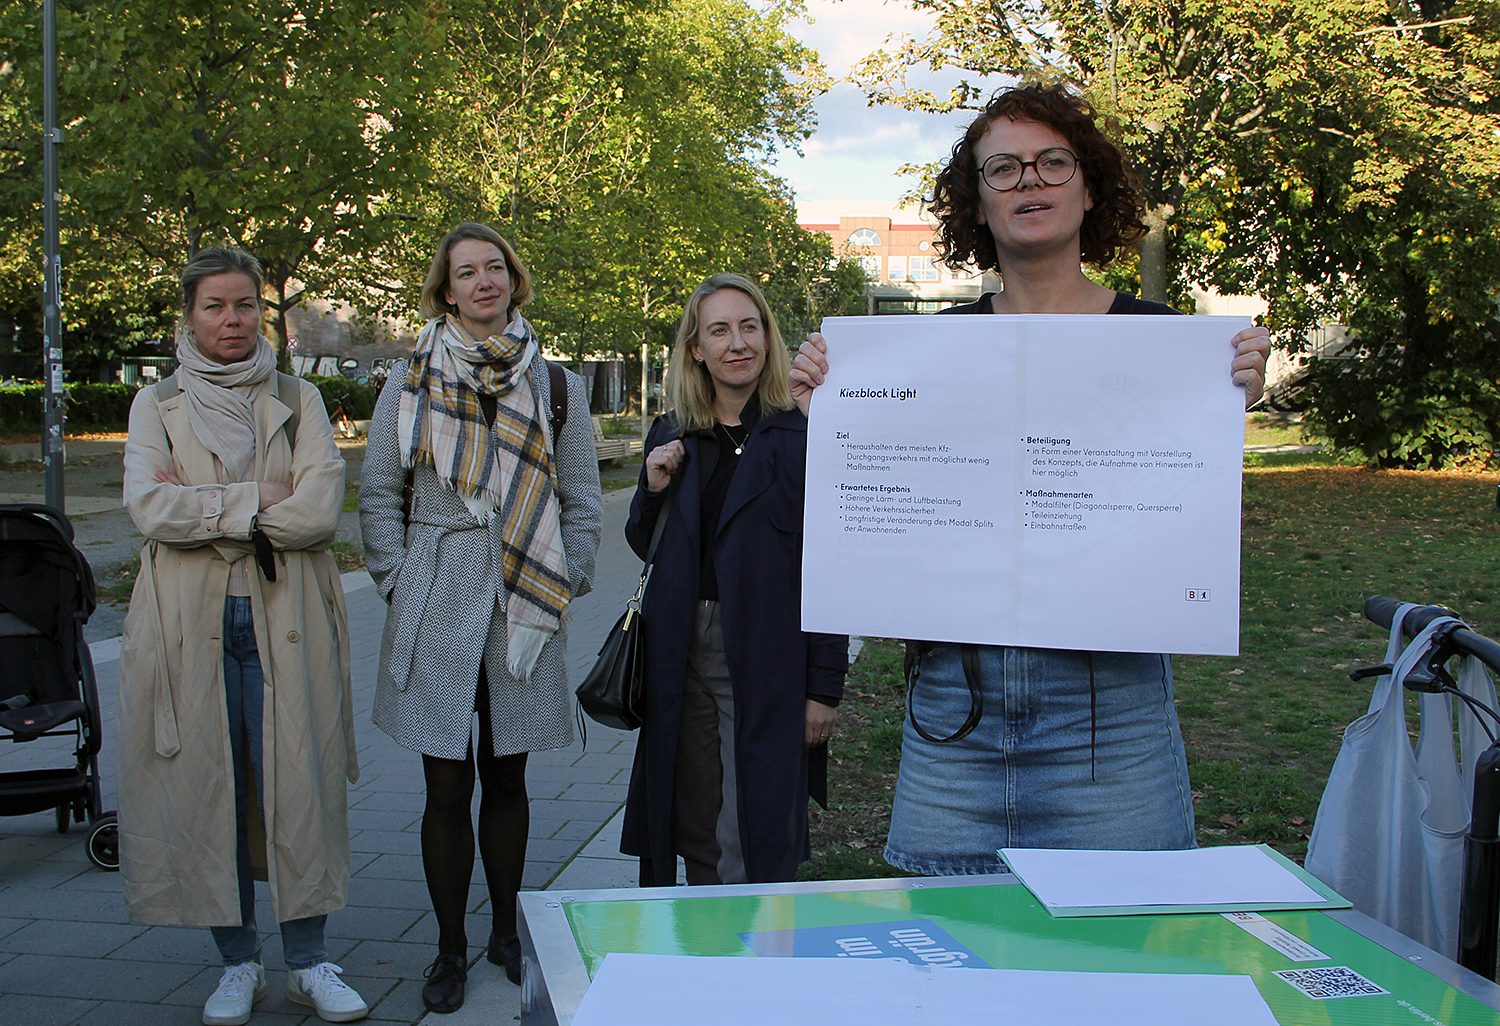 Laura Fritsche, Verkehrsplanerin beim Bezirksamt, erklärt die Maßnahmen im Viertel. Foto: Hensel